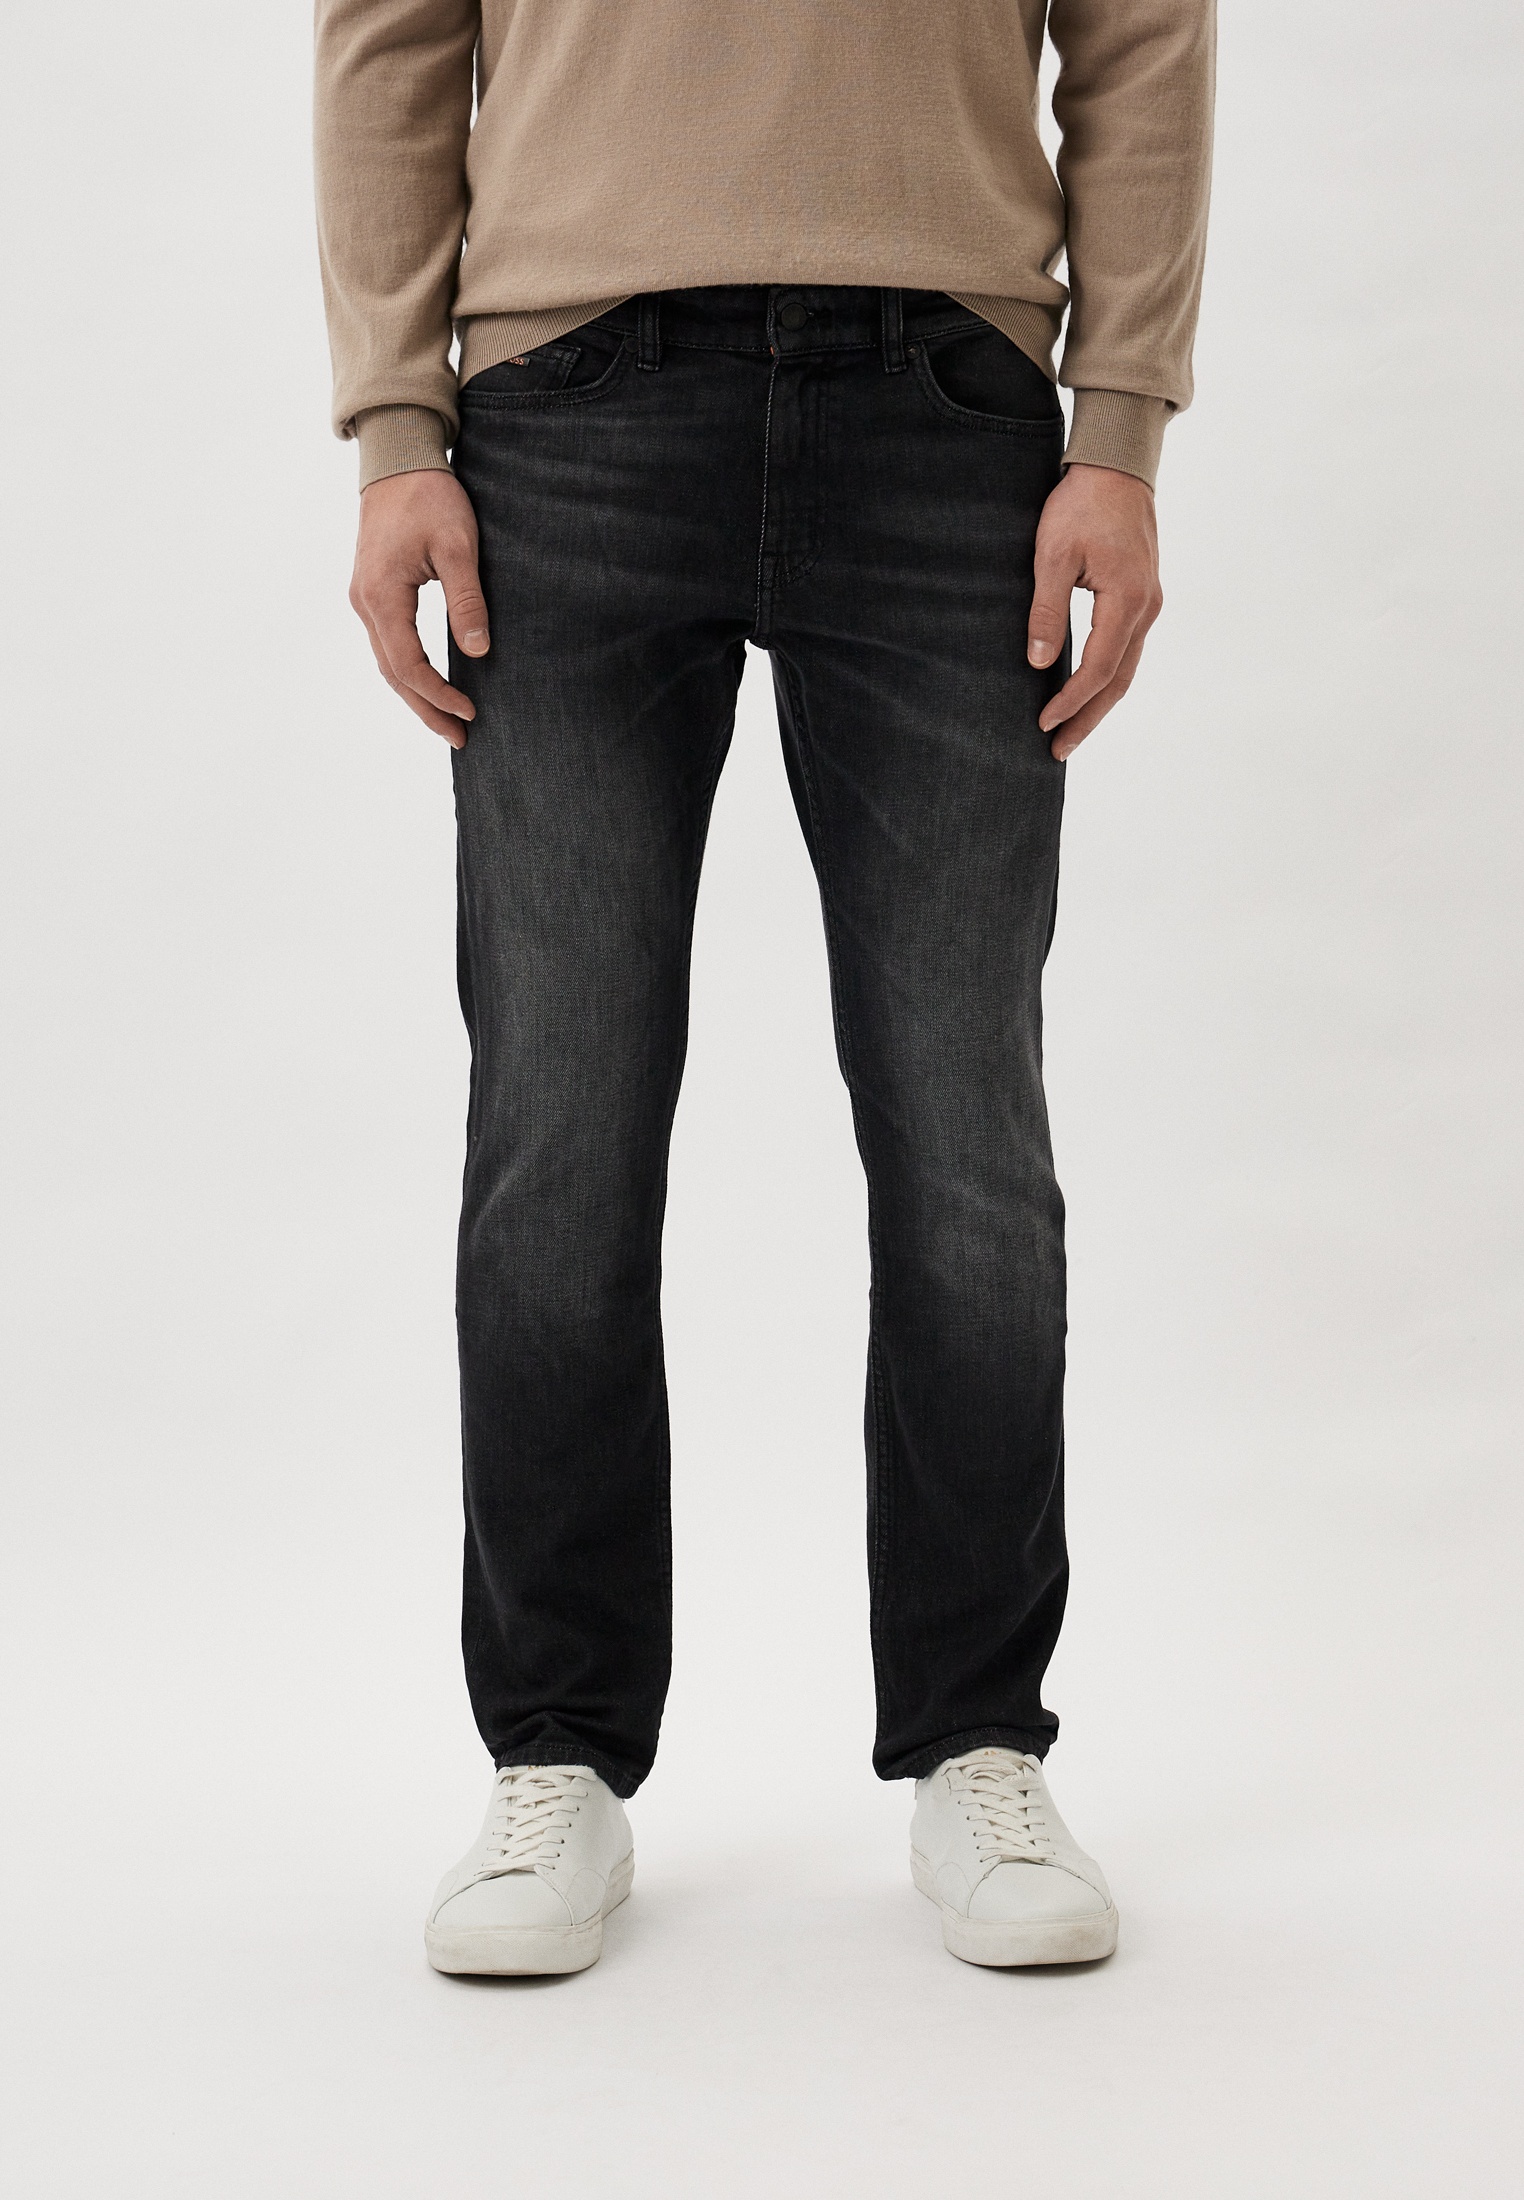 Мужские прямые джинсы Boss (Босс) 50506699: изображение 1